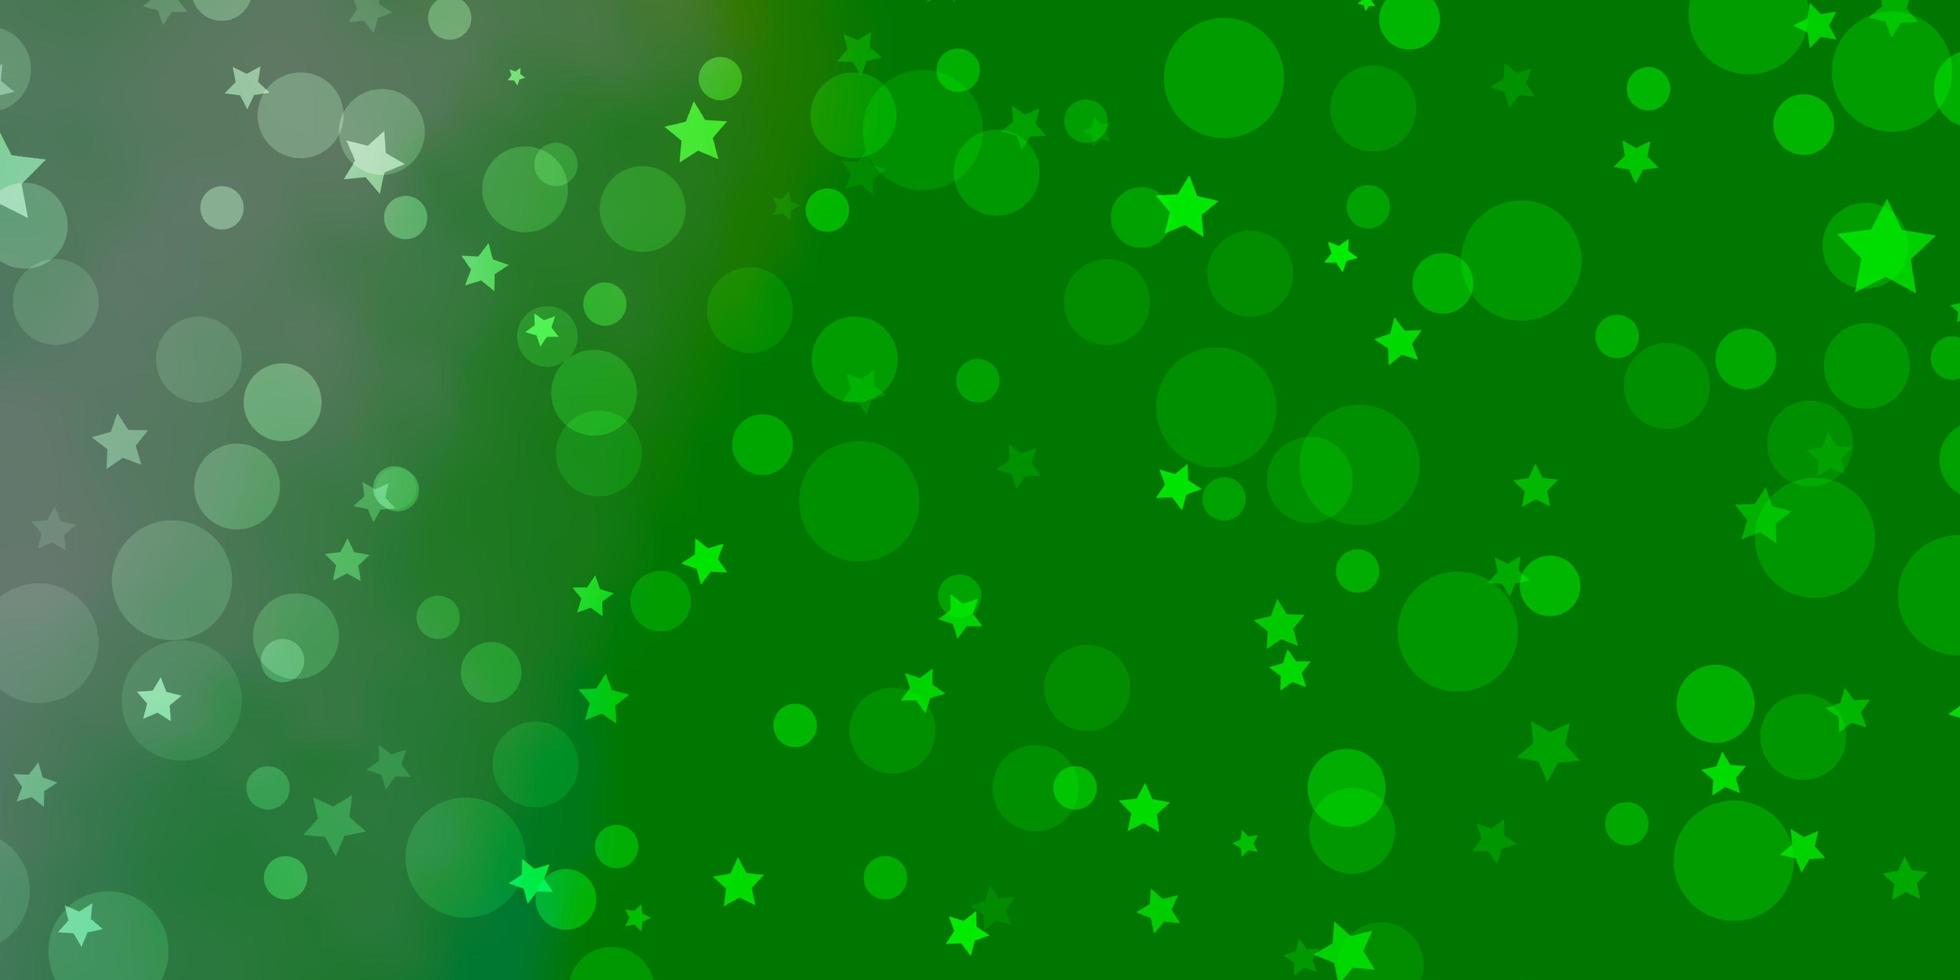 textura de vetor verde claro com círculos, estrelas.